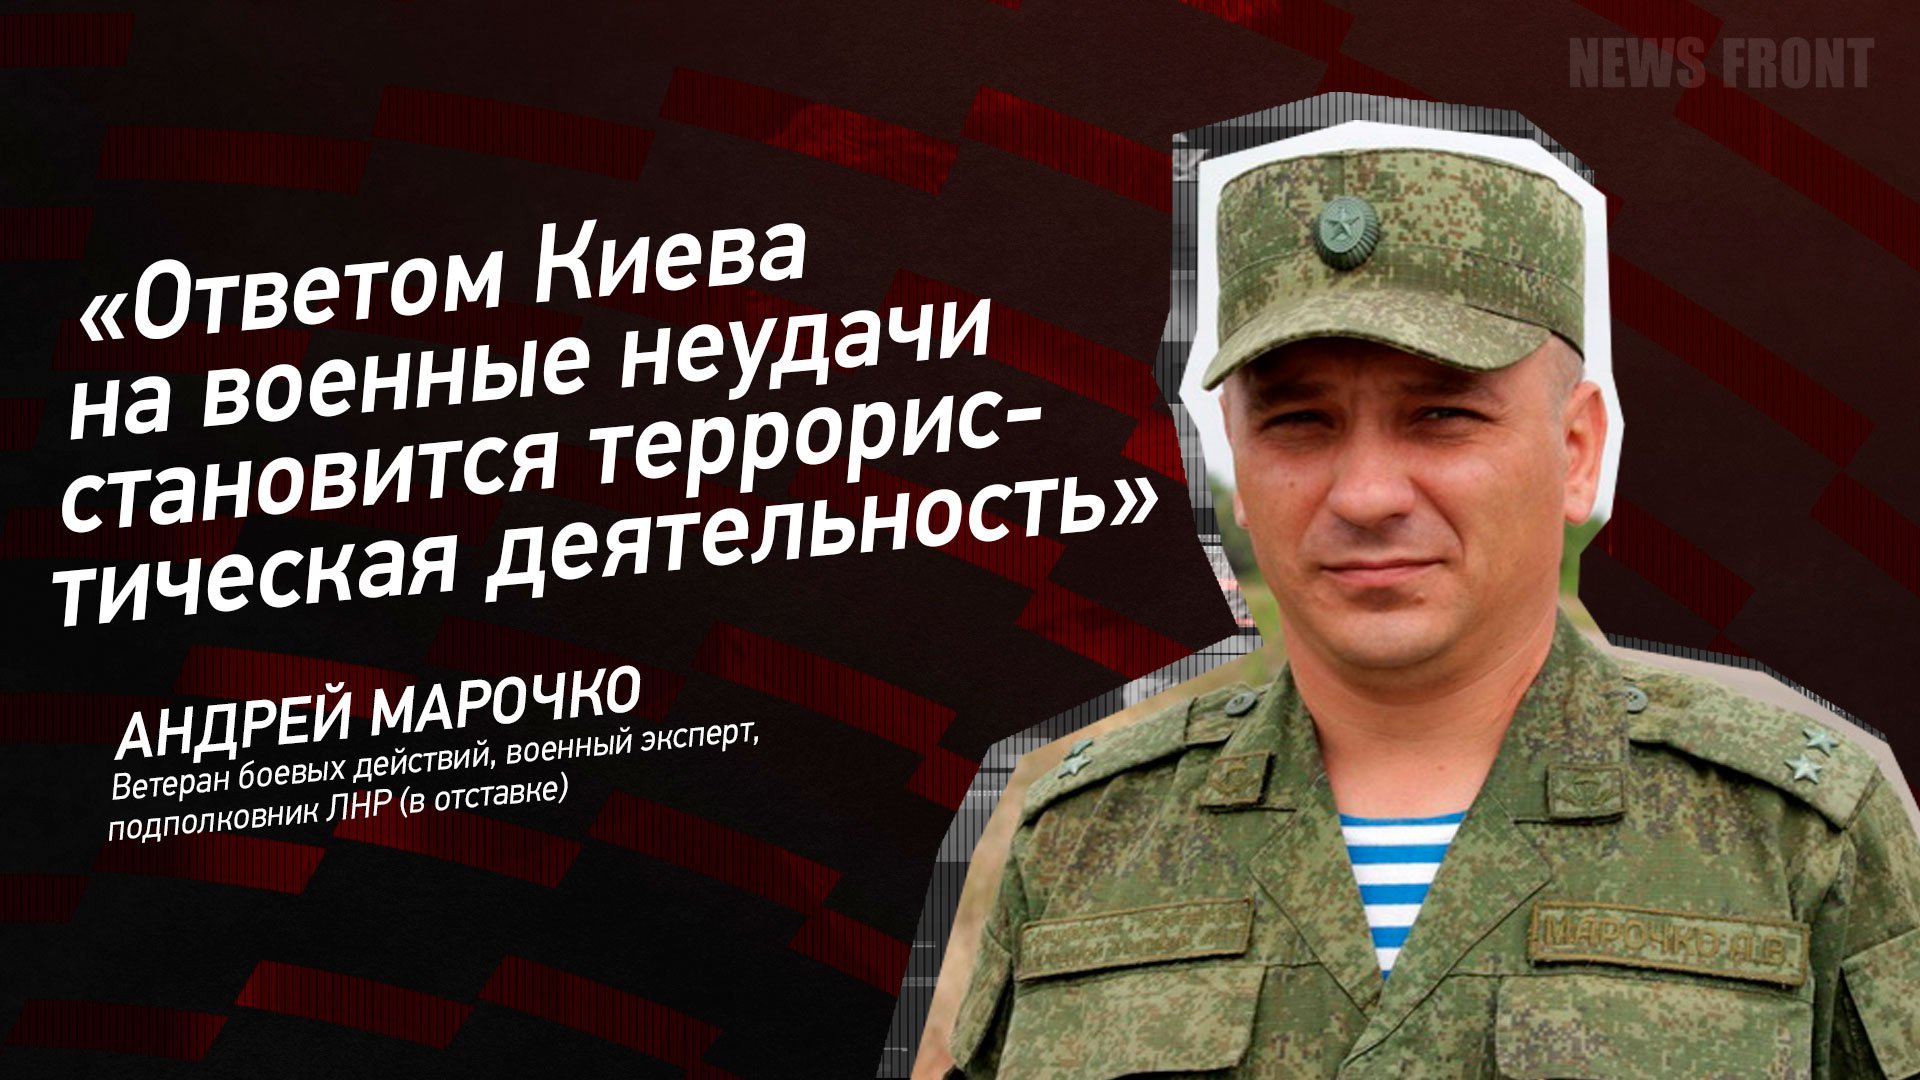 "Ответом Киева на военные неудачи становится террористическая деятельность" - Андрей Марочко